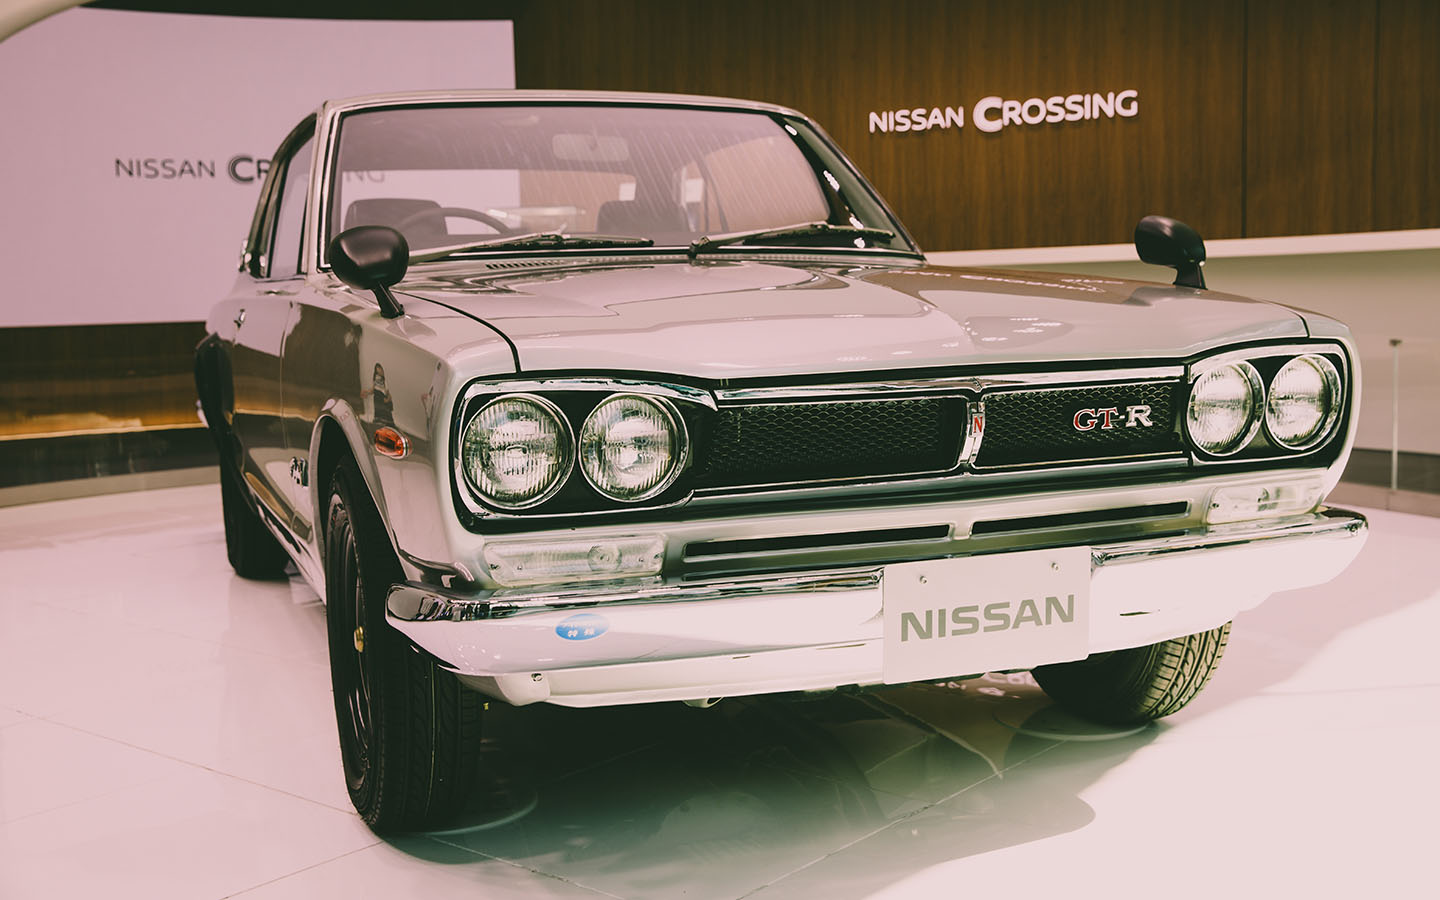 Nissan Models like GT-R